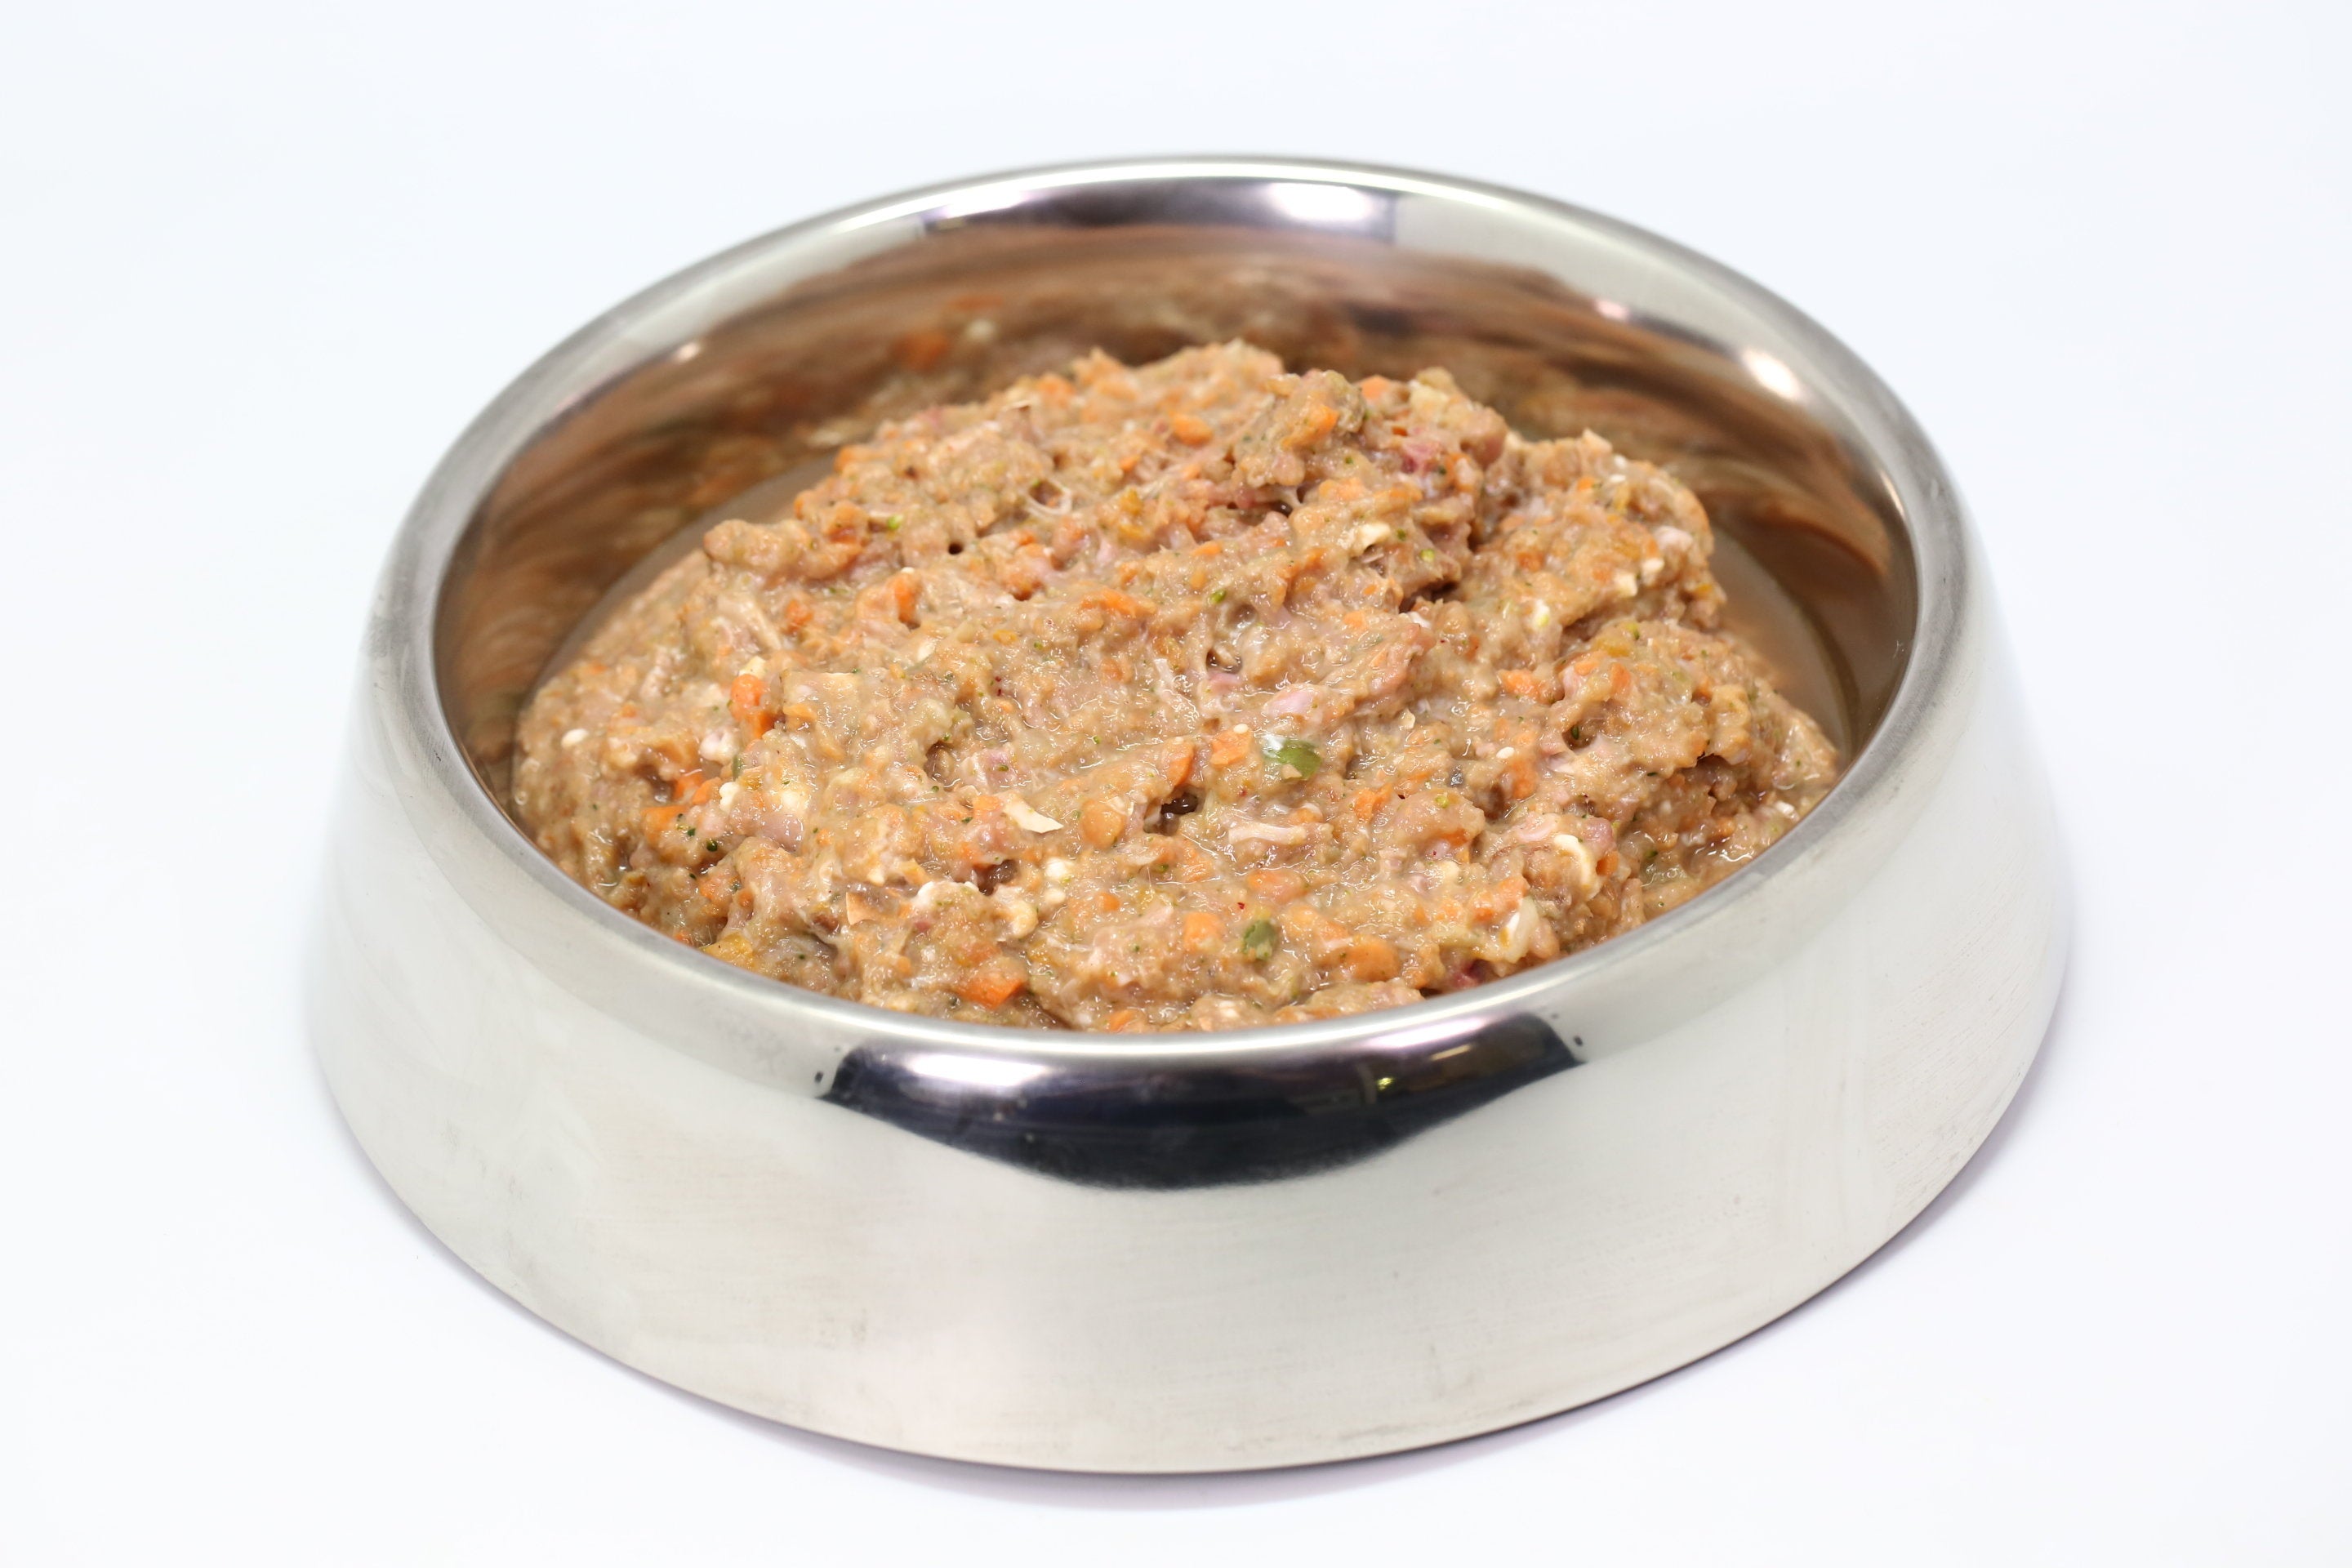 Somerford Raw & Natural "GAME MEAT RANGE" - Adult Dog Food Kangaroo & Veg Pack + FREE Meaty Bones